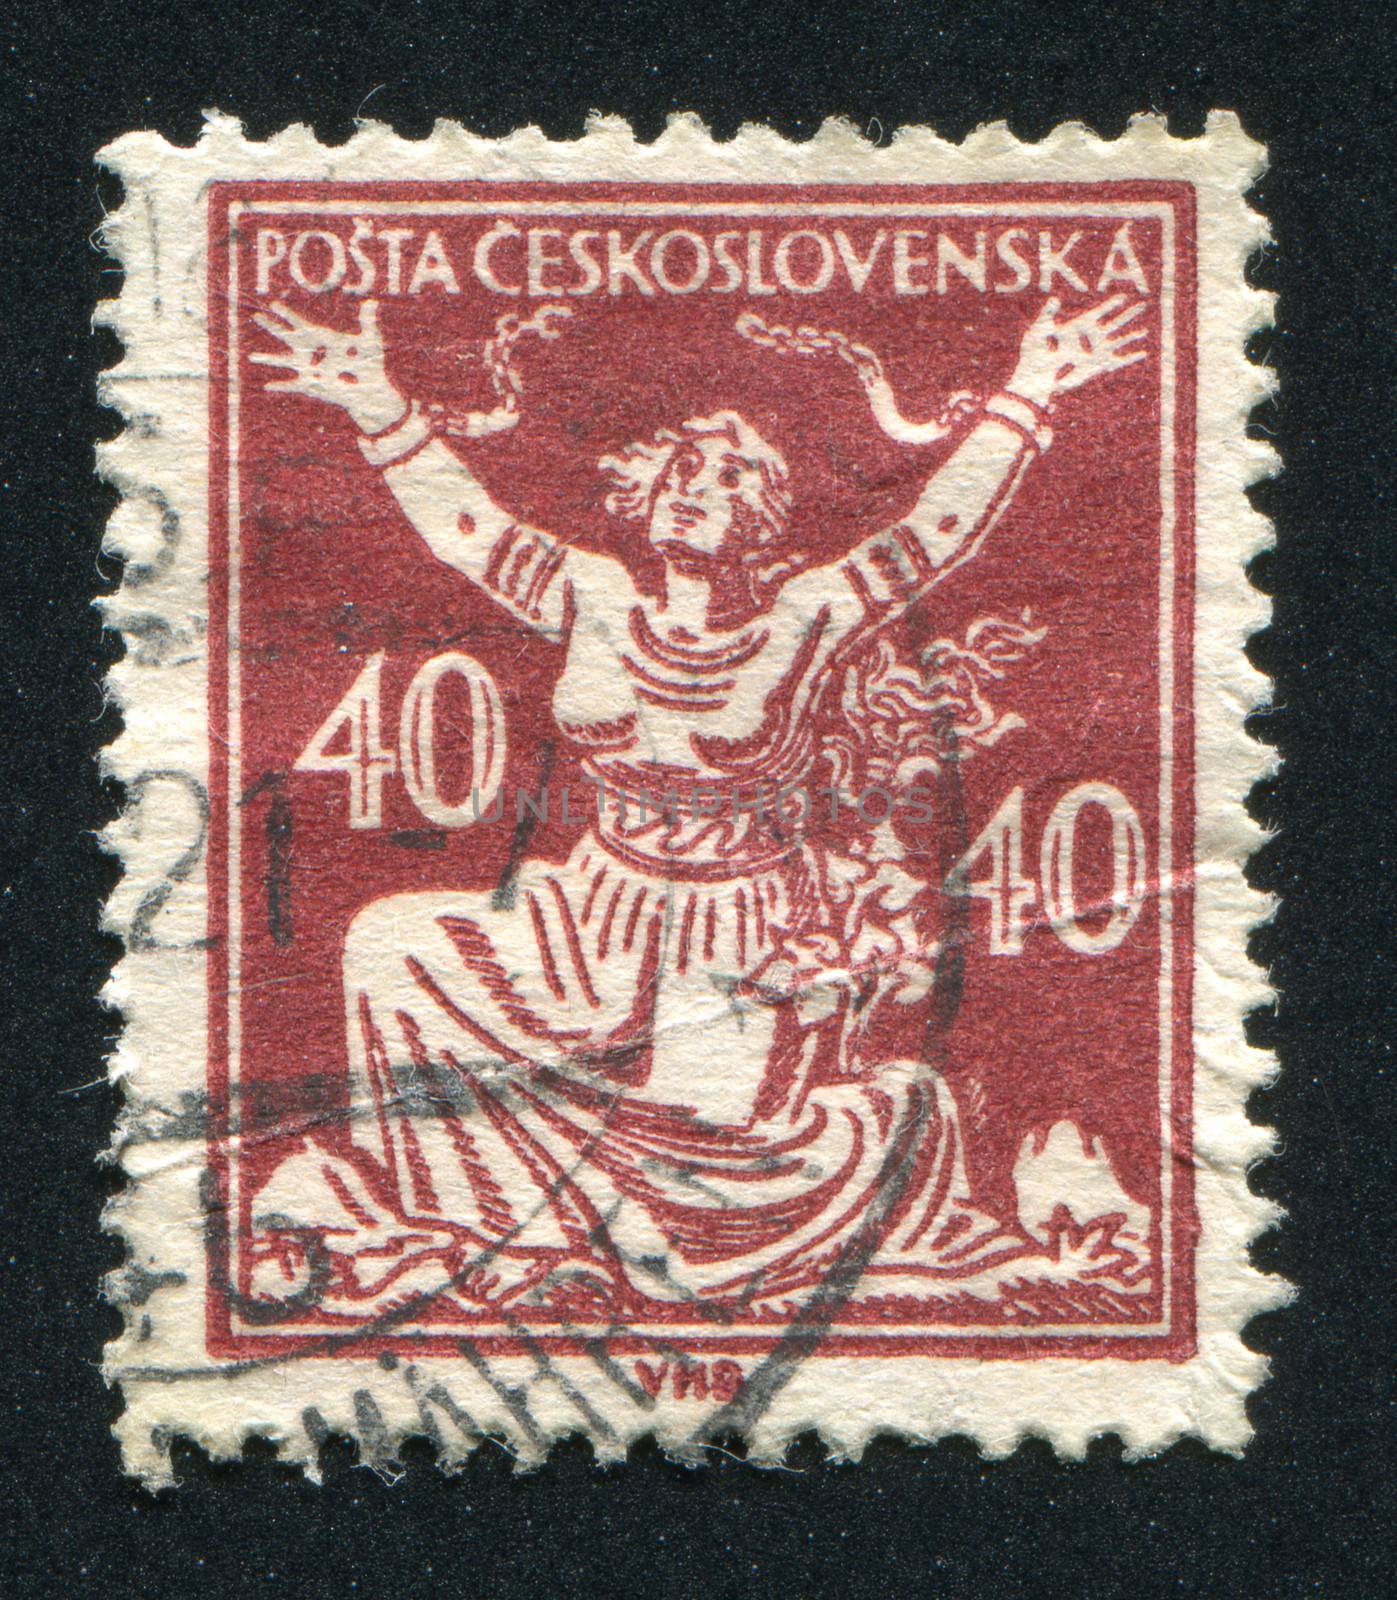 CZECHOSLOVAKIA - CIRCA 1920: stamp printed by Czechoslovakia, shows Czechoslovakia Breaking Chains to Freedom, circa 1920